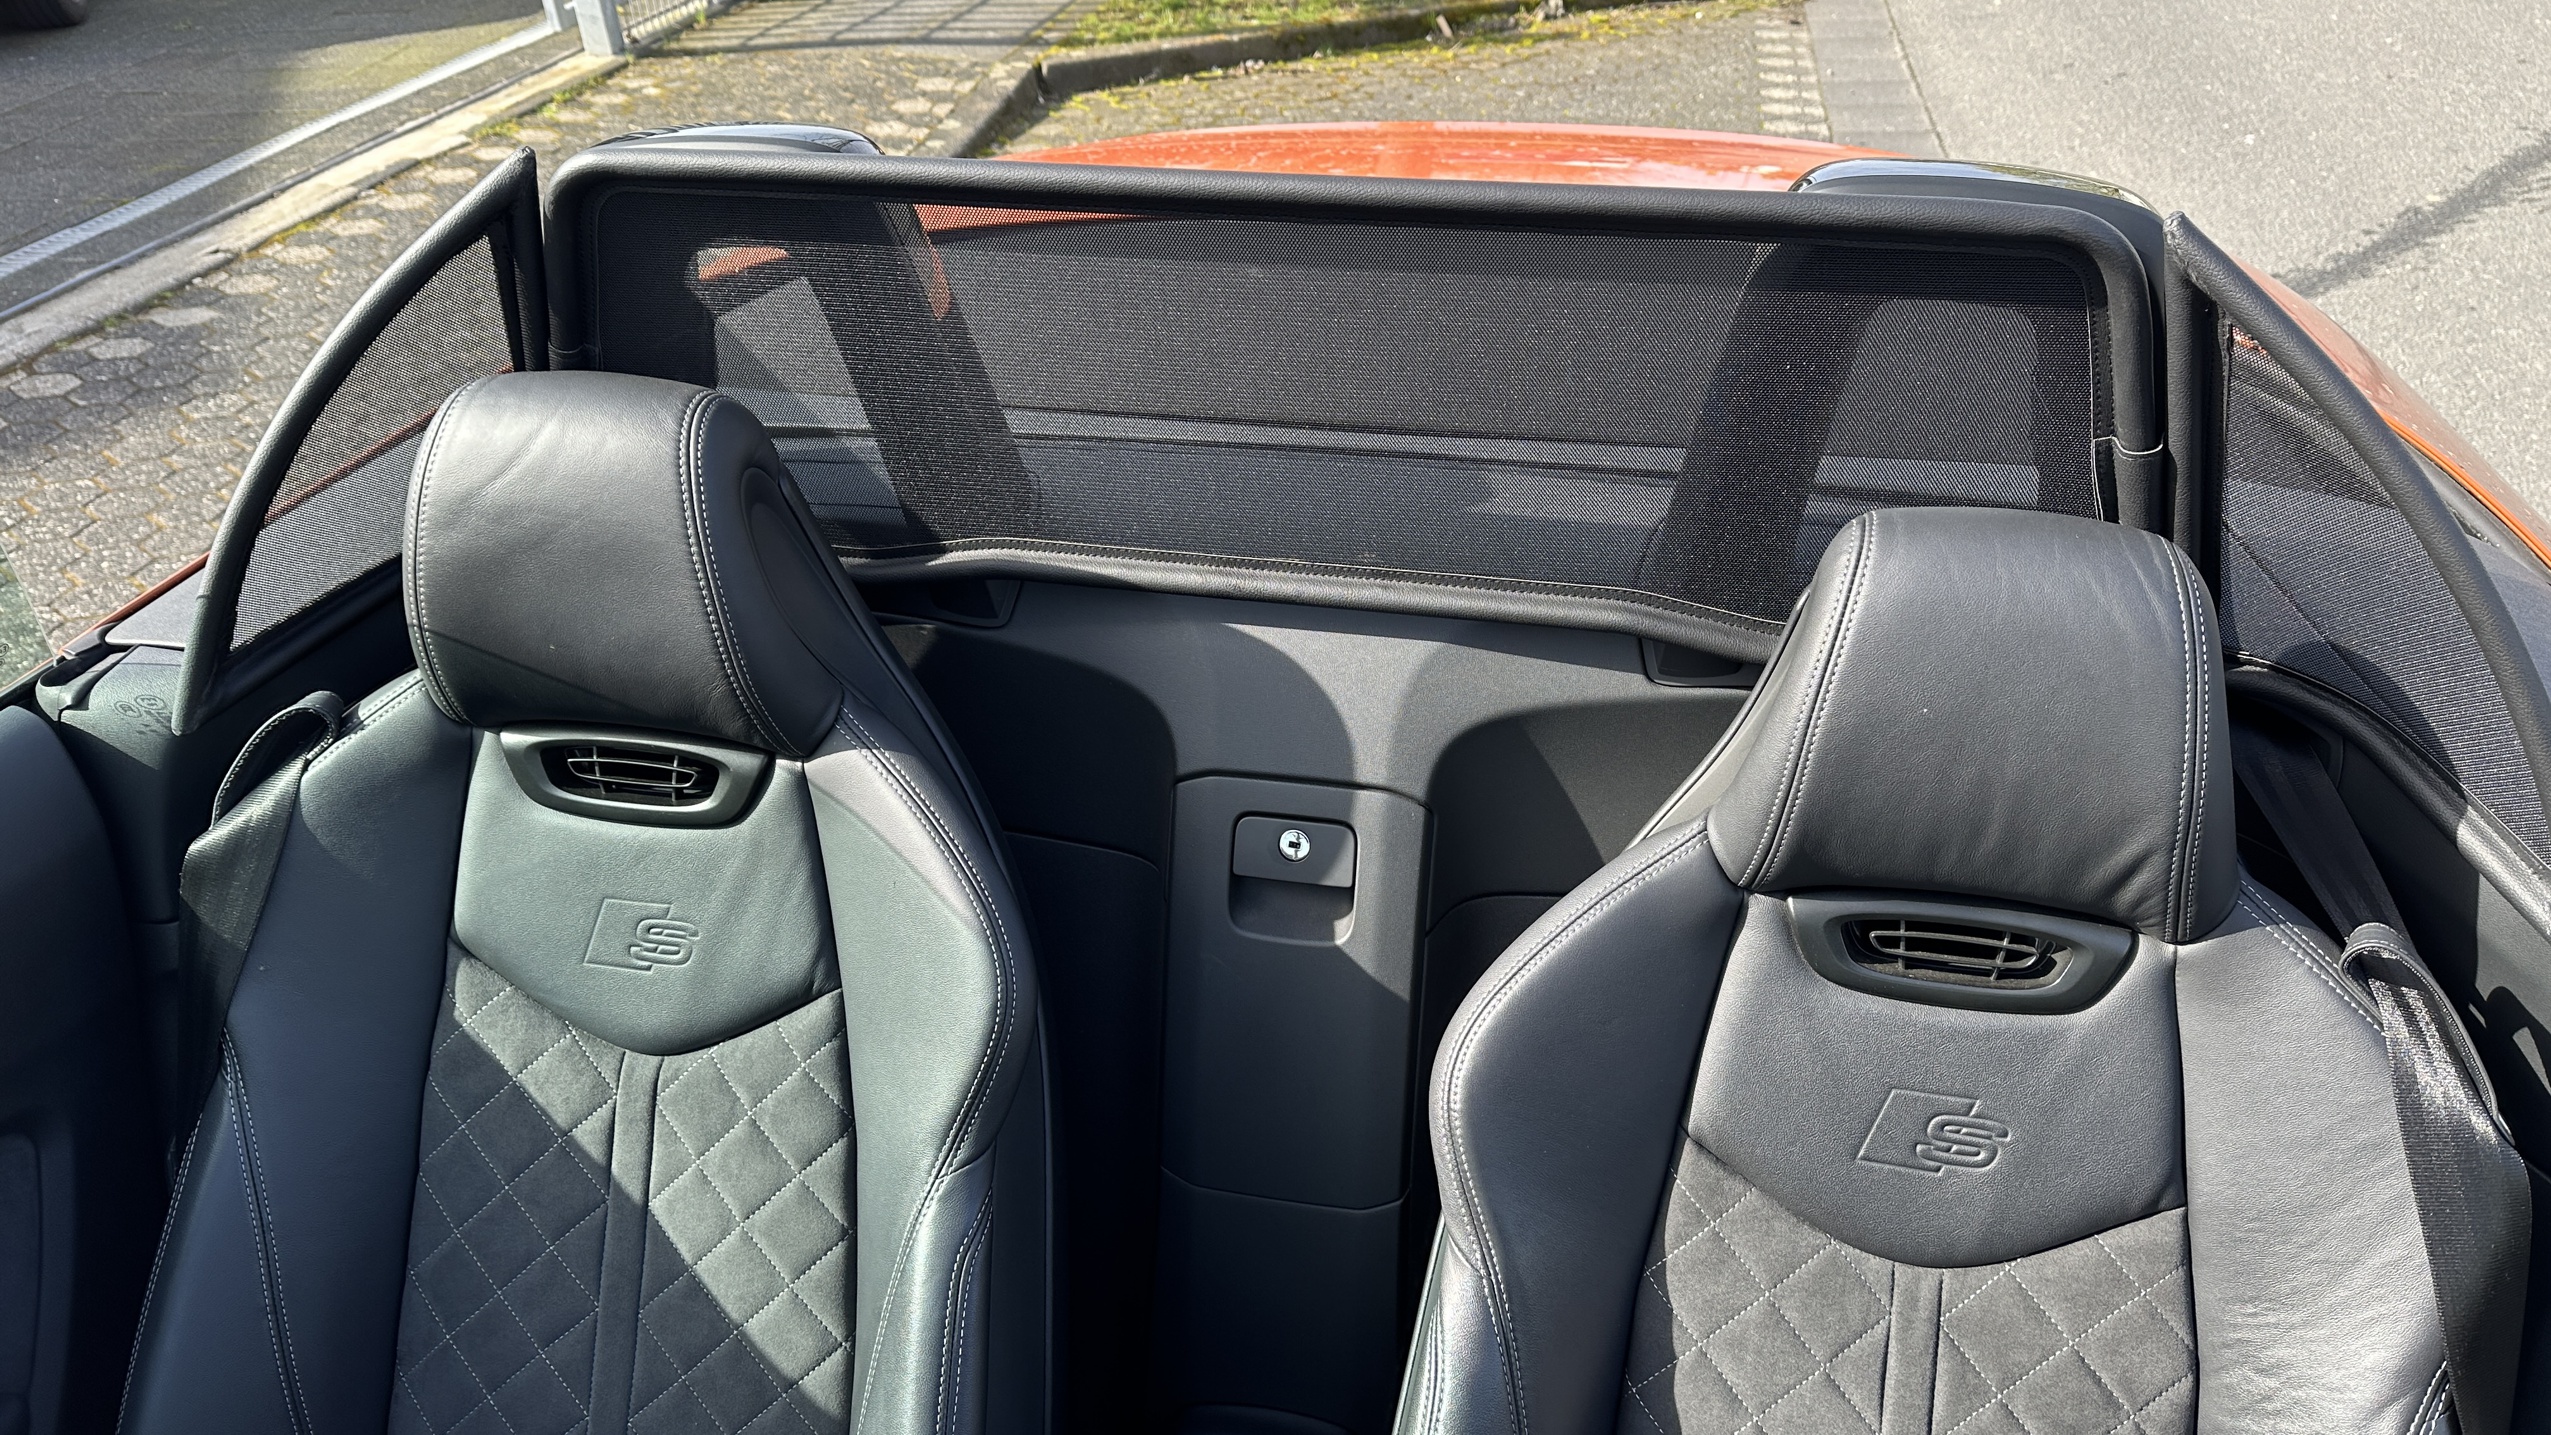 Airax Vindavvisare lämplig för Audi TT FV9 Roadster Cabrio  